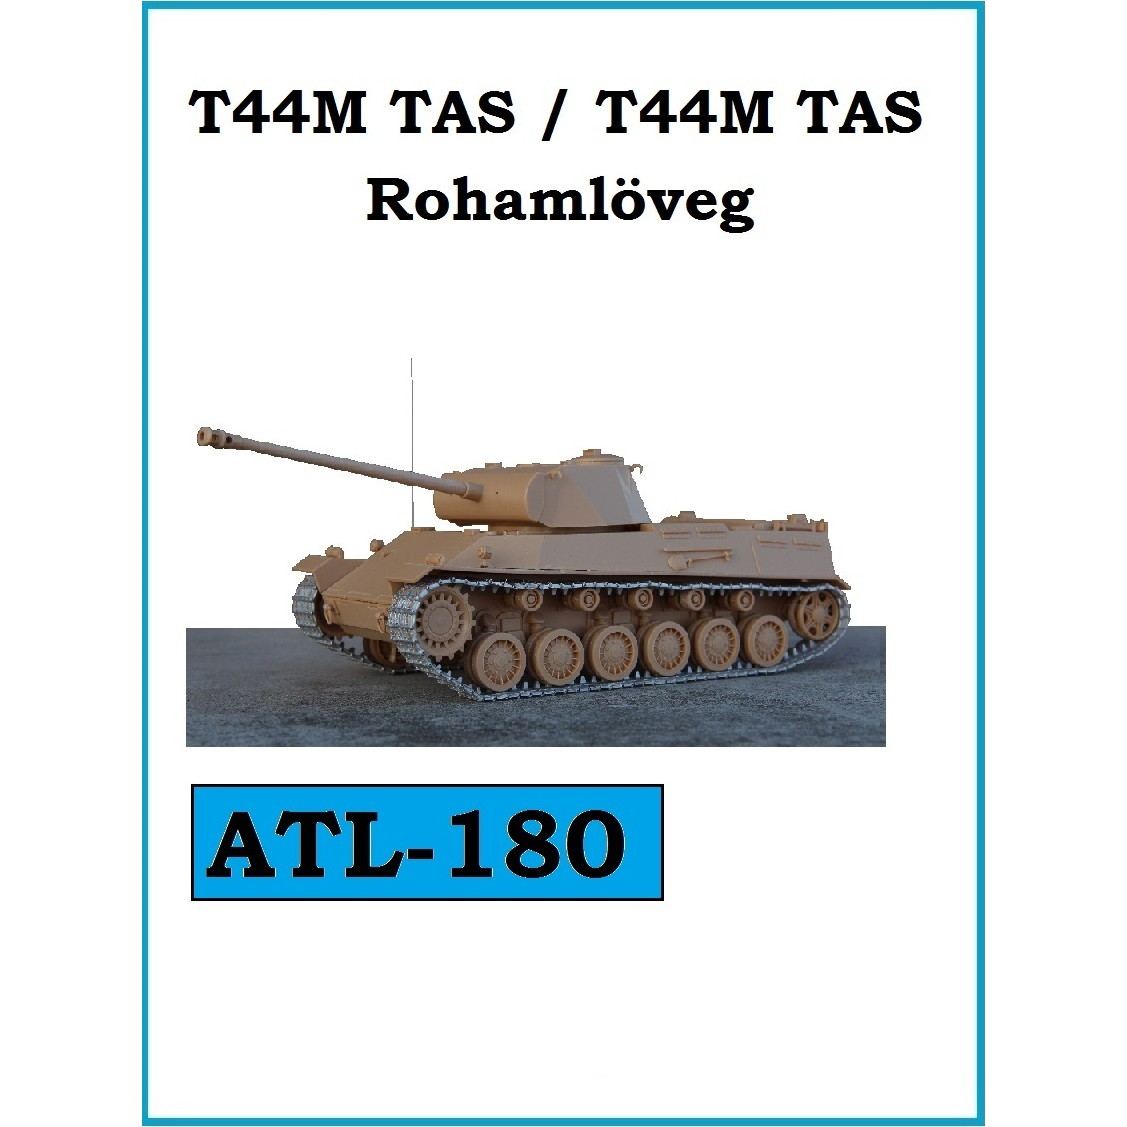 【新製品】ATL-180 ハンガリー 44M/44M突撃砲